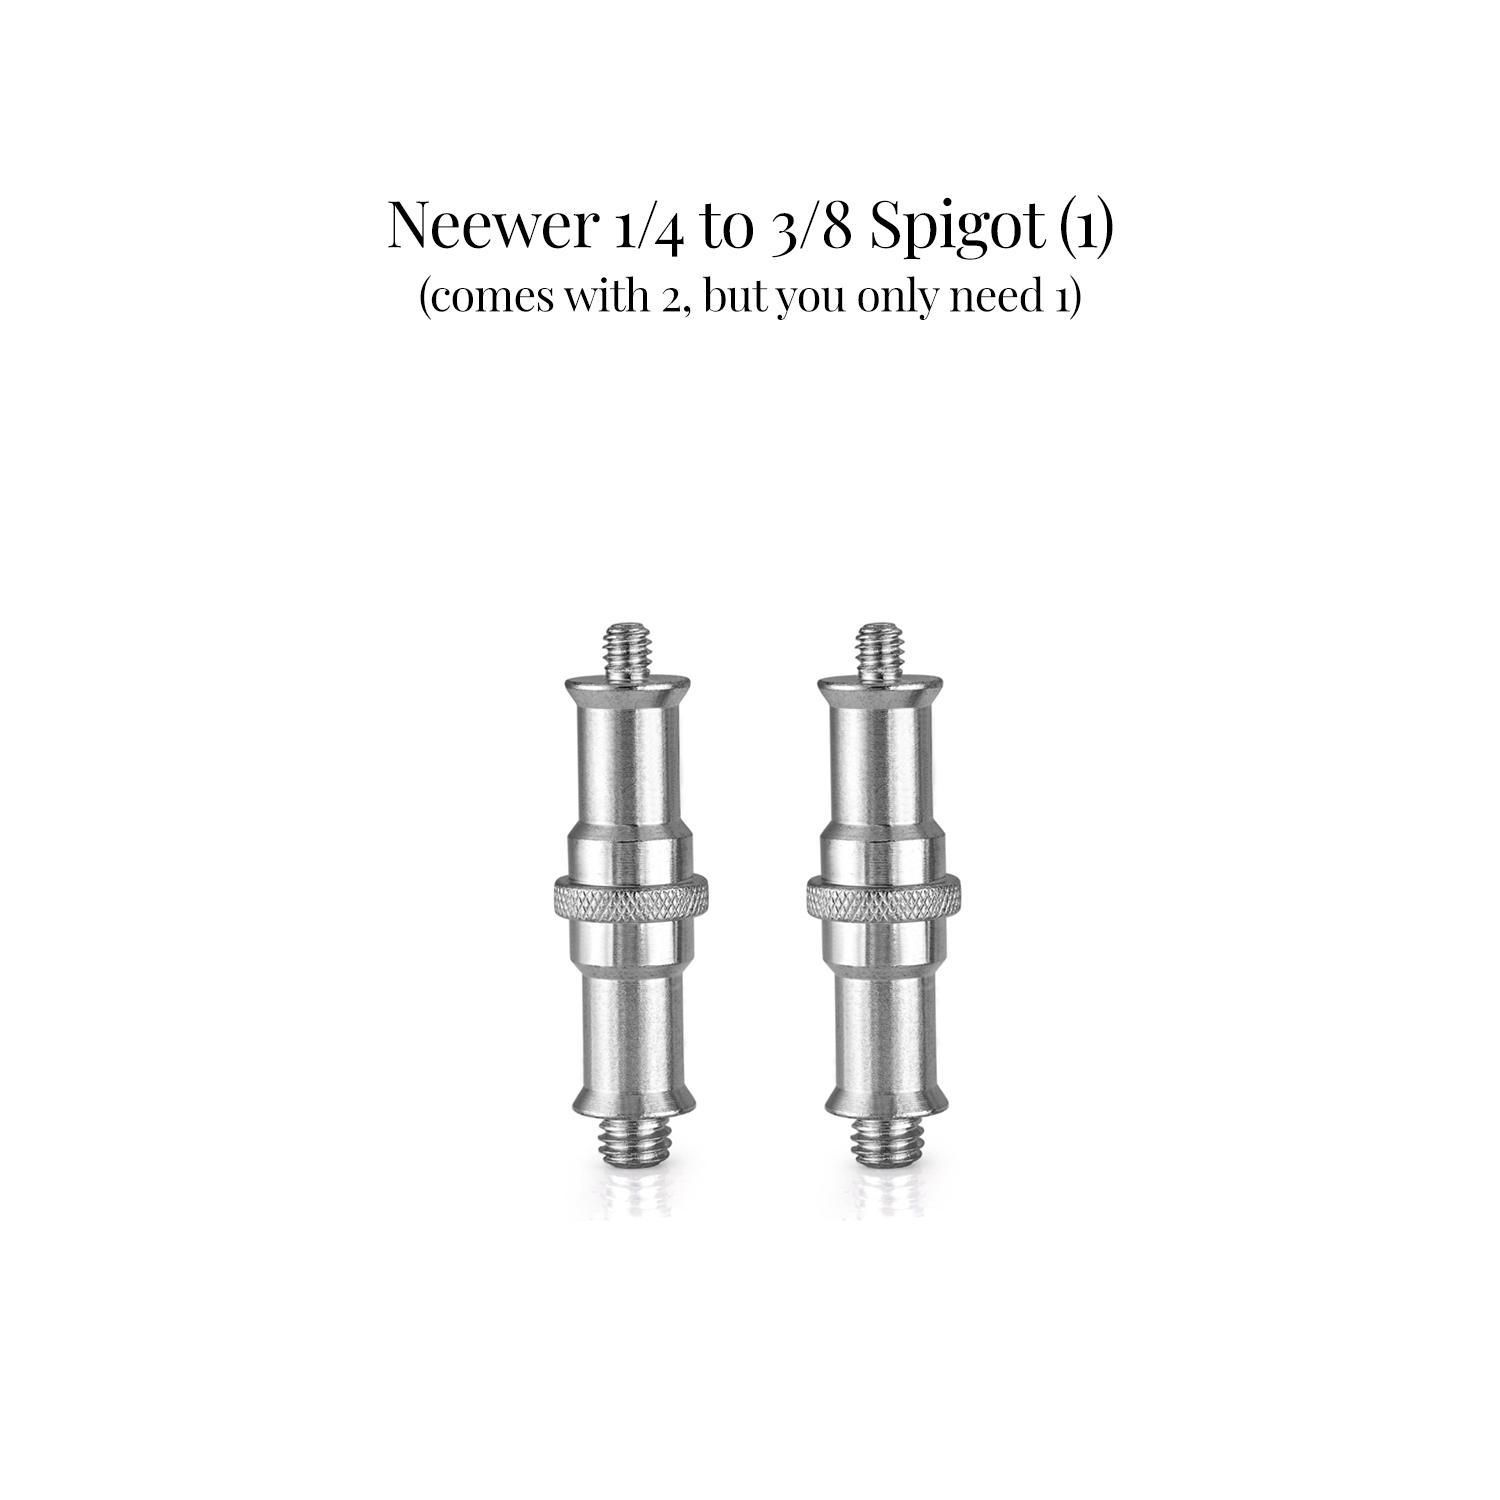 neewer 1/4 to 3/8 spigot